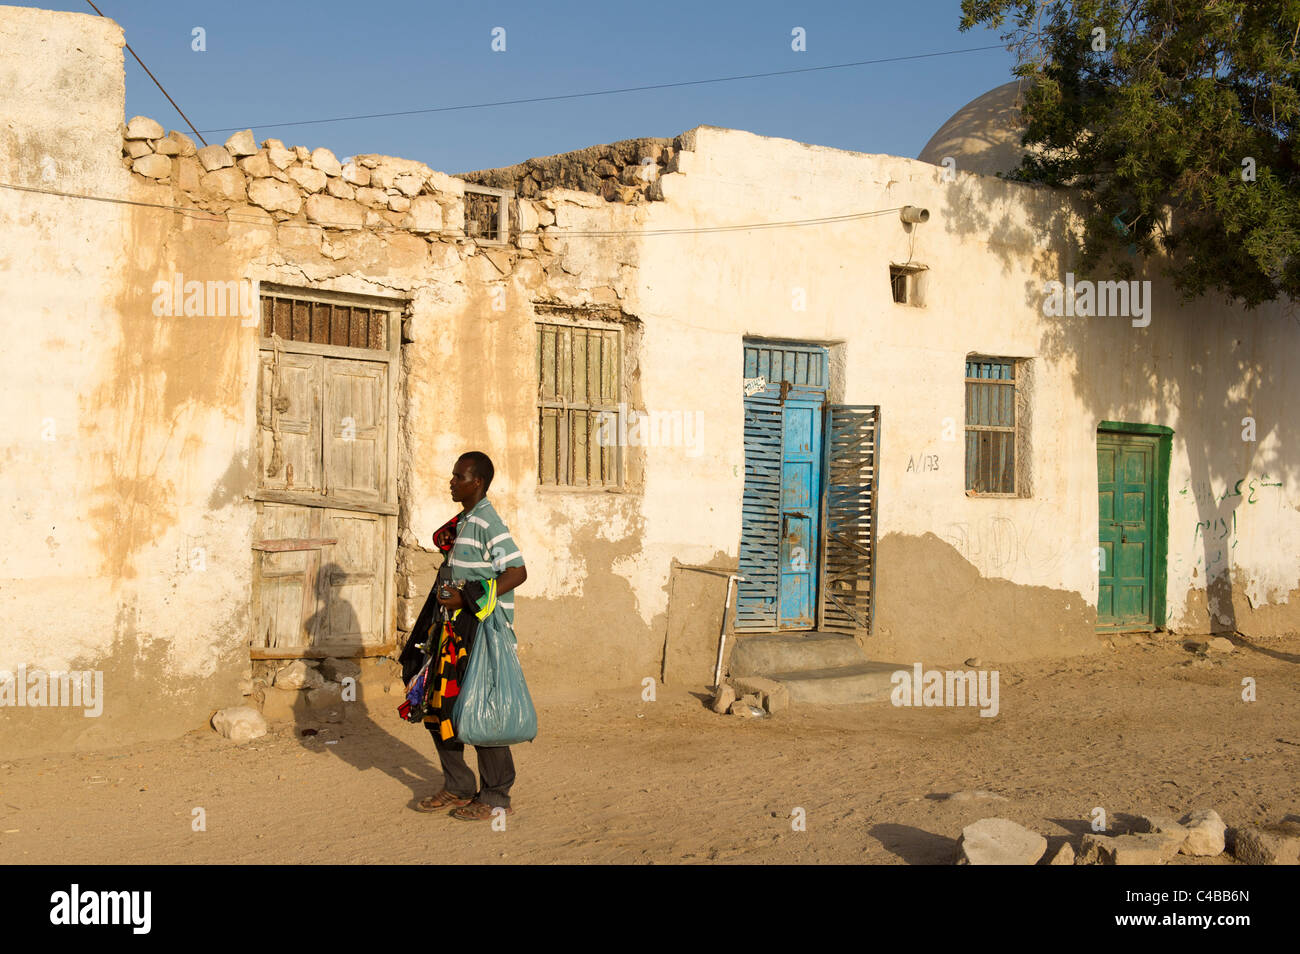 Street scene, Berbera, Somaliland, Somalia Stock Photo